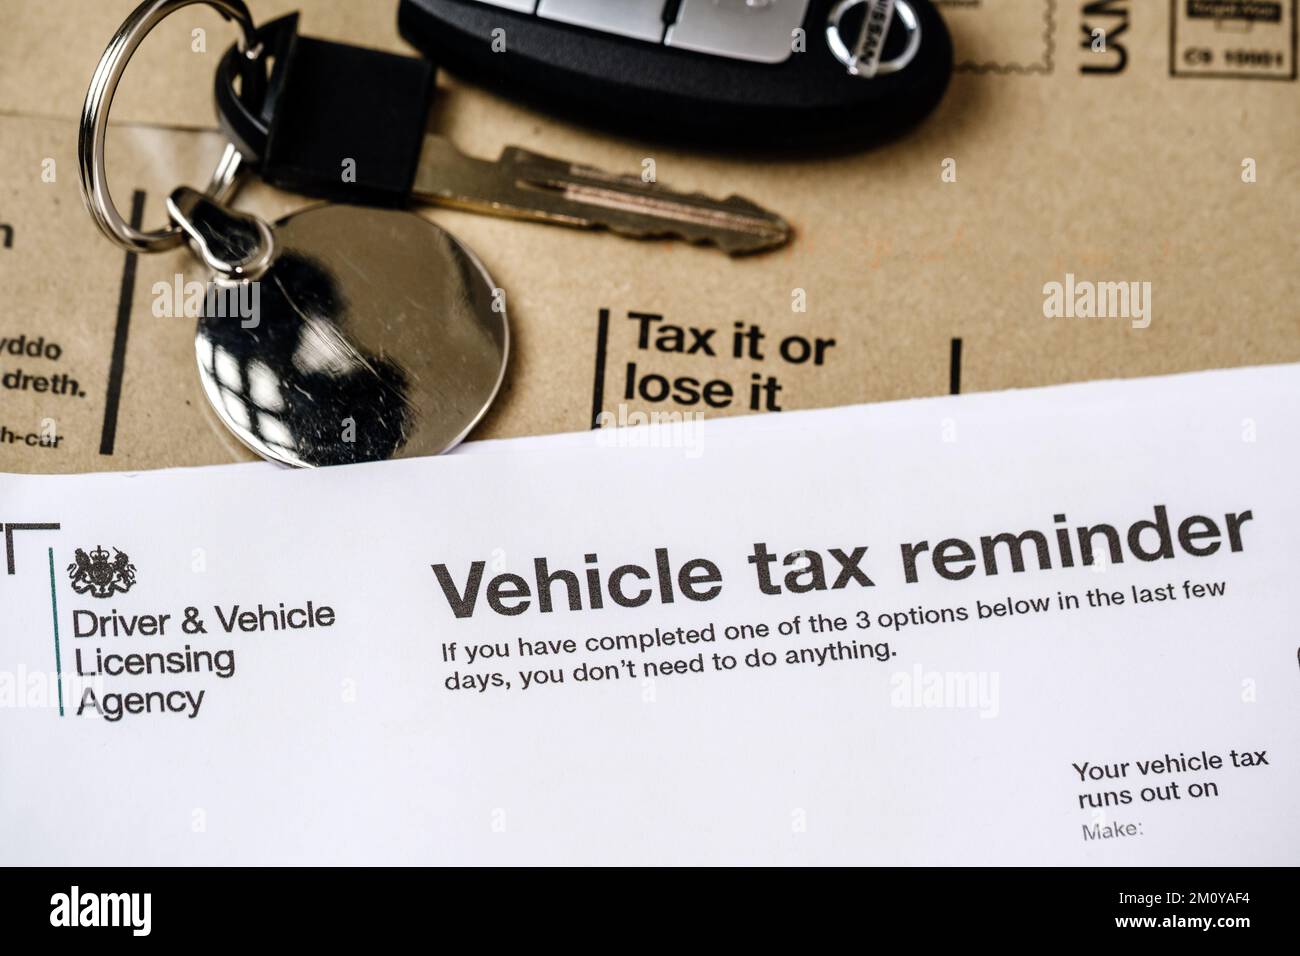 Lettre de rappel des taxes sur les véhicules V11 authentiques de DVLA placée sur une enveloppe marron. Taxe routière britannique pour votre voiture. Stafford, Royaume-Uni, 8 décembre 2022 Banque D'Images